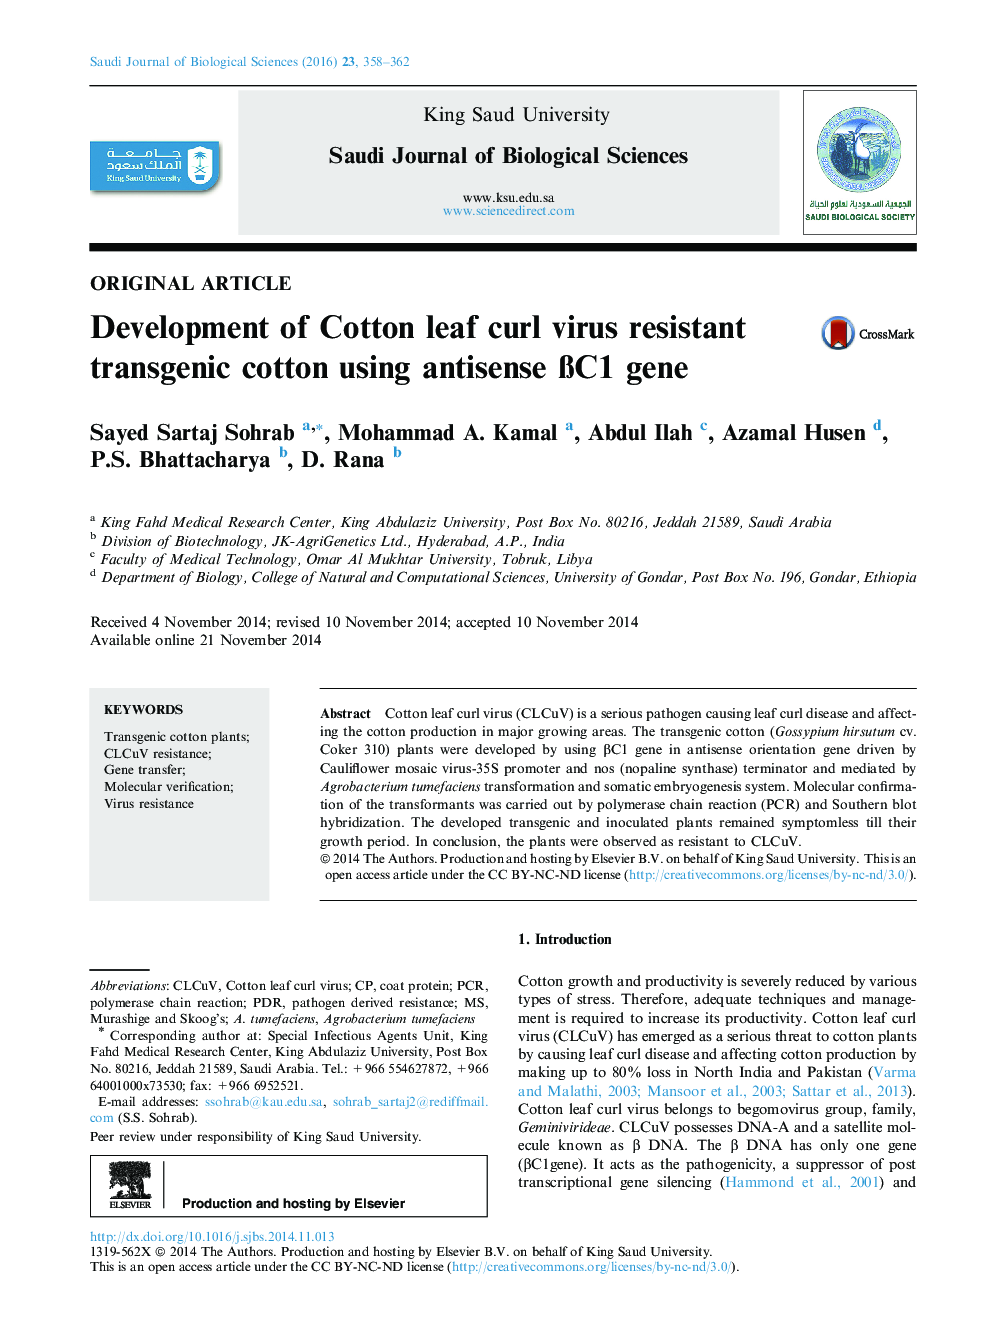 توسعه پنبه ترانس ژنیک مقاوم به ویروس Curl پنبه با استفاده از ژن βC1 آنتیسنس